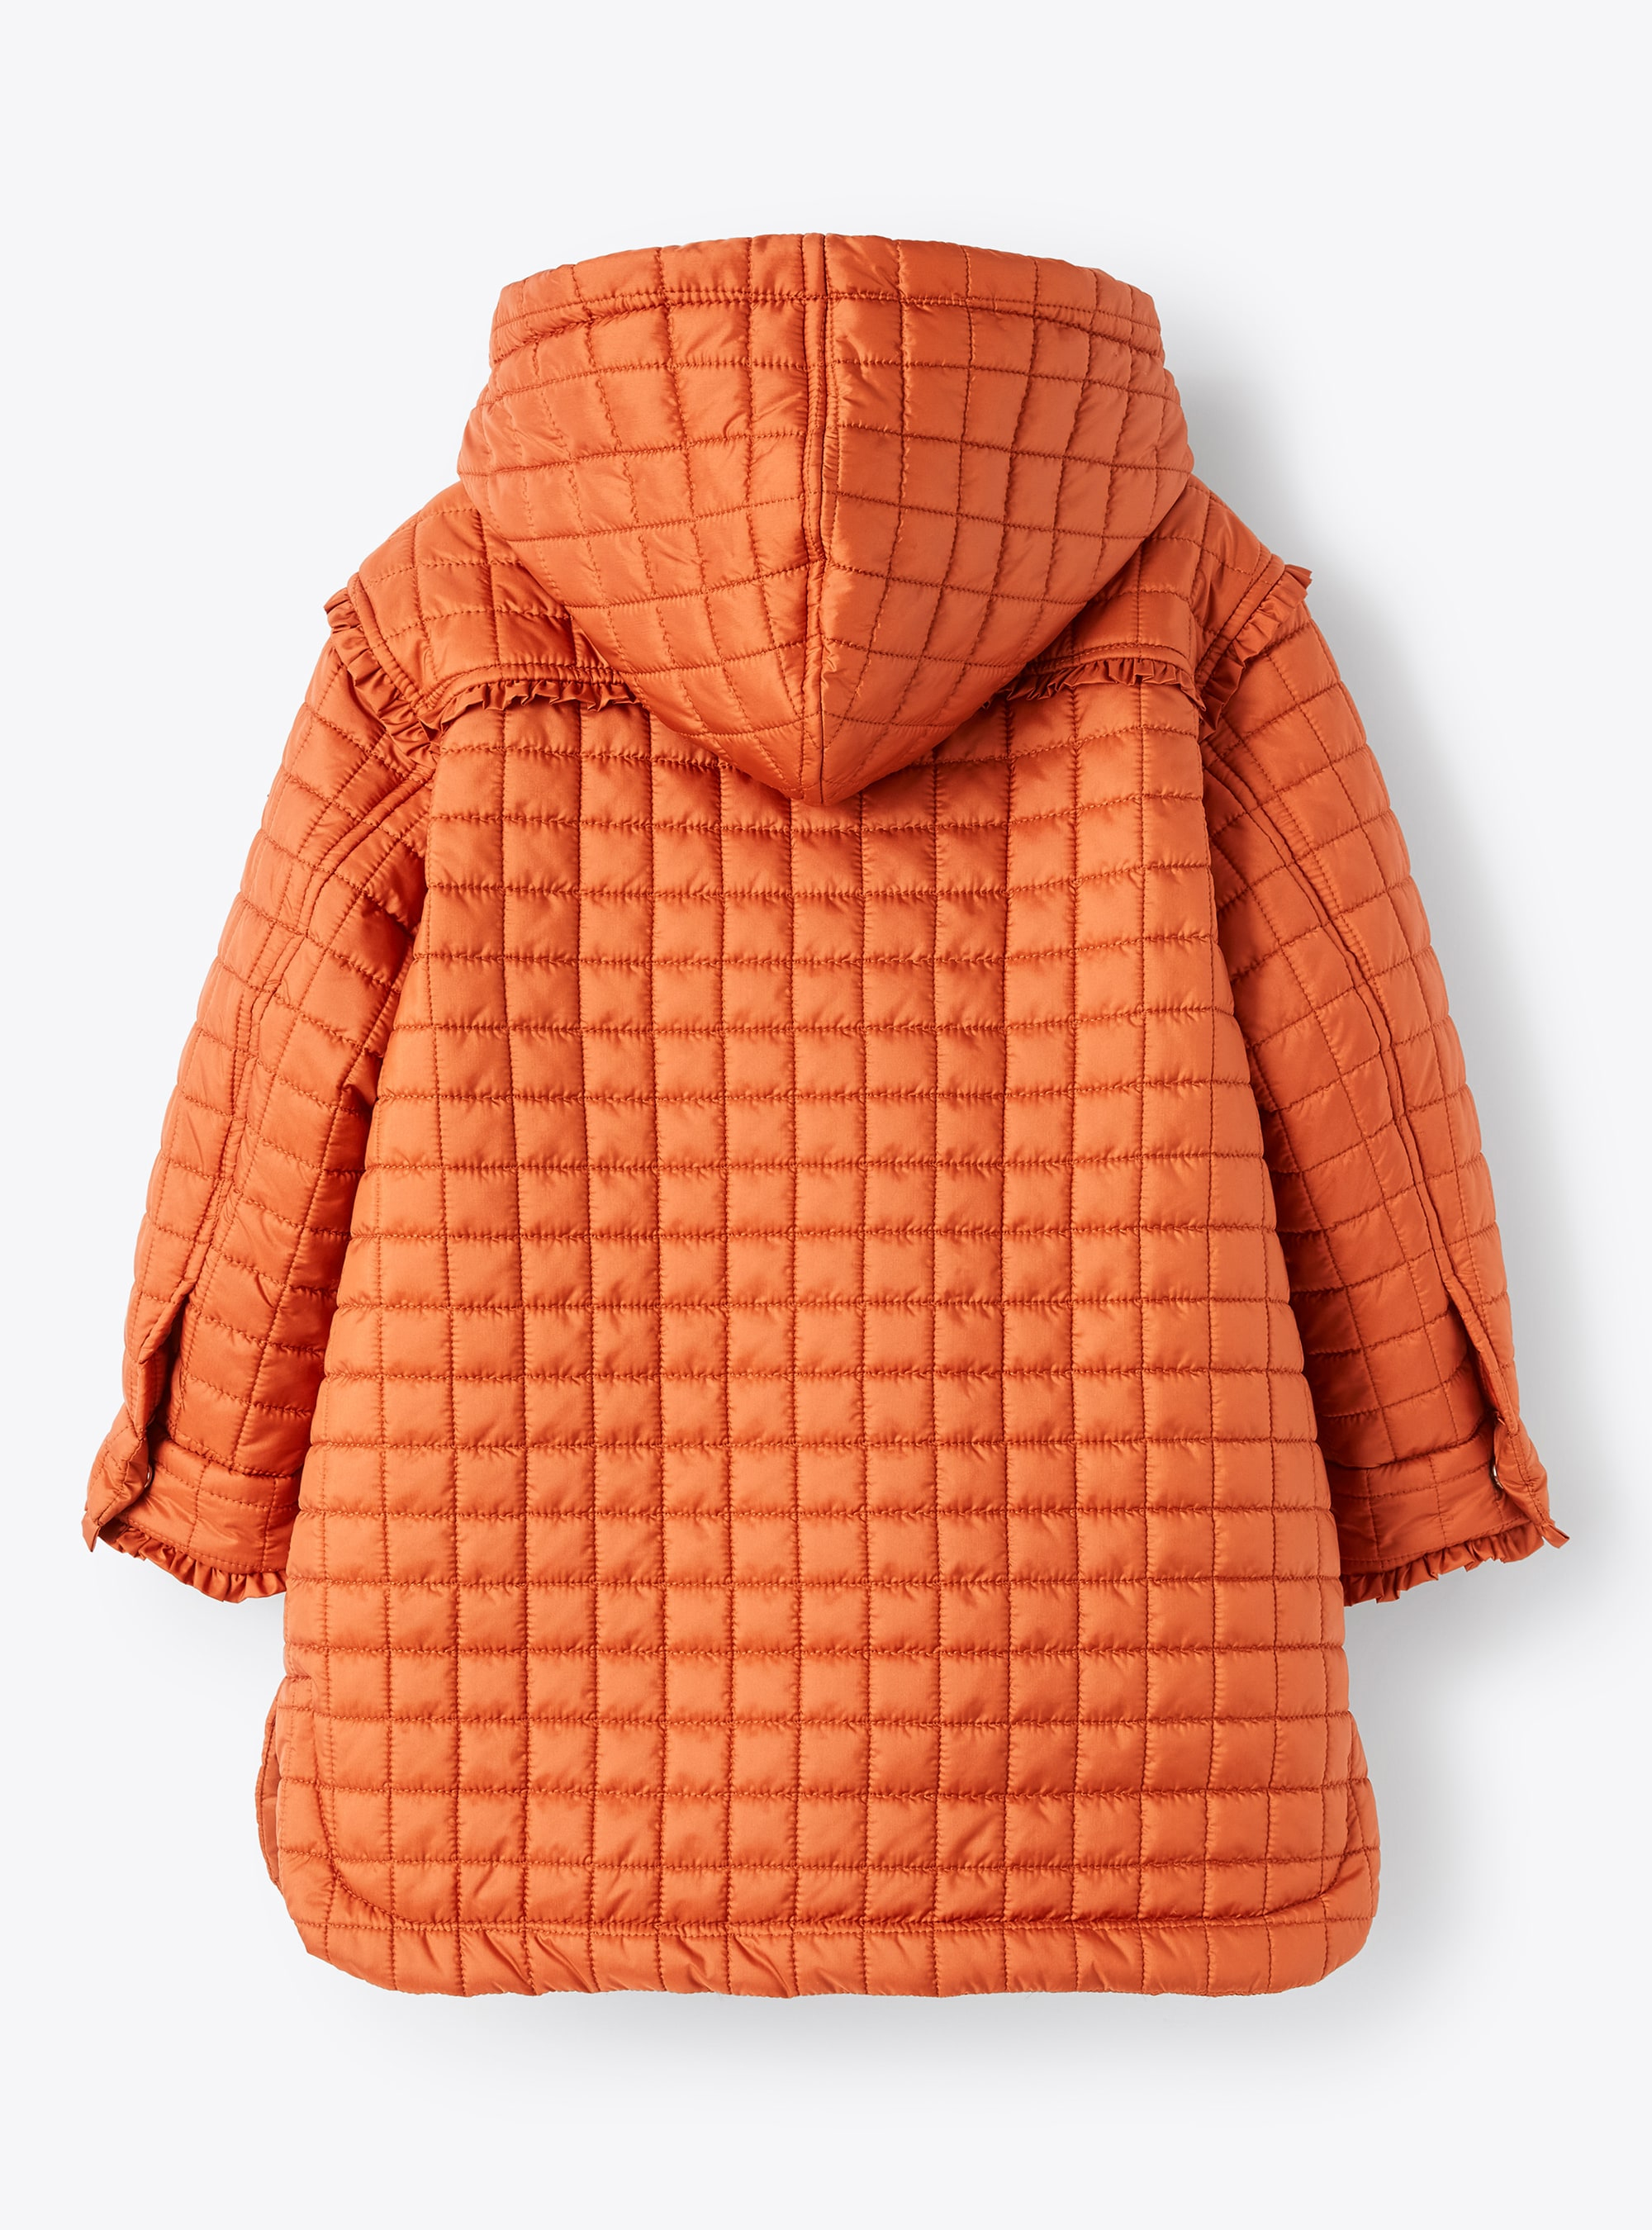 Orangefarbener Mantel mit geometrischer Steppung - Orange | Il Gufo